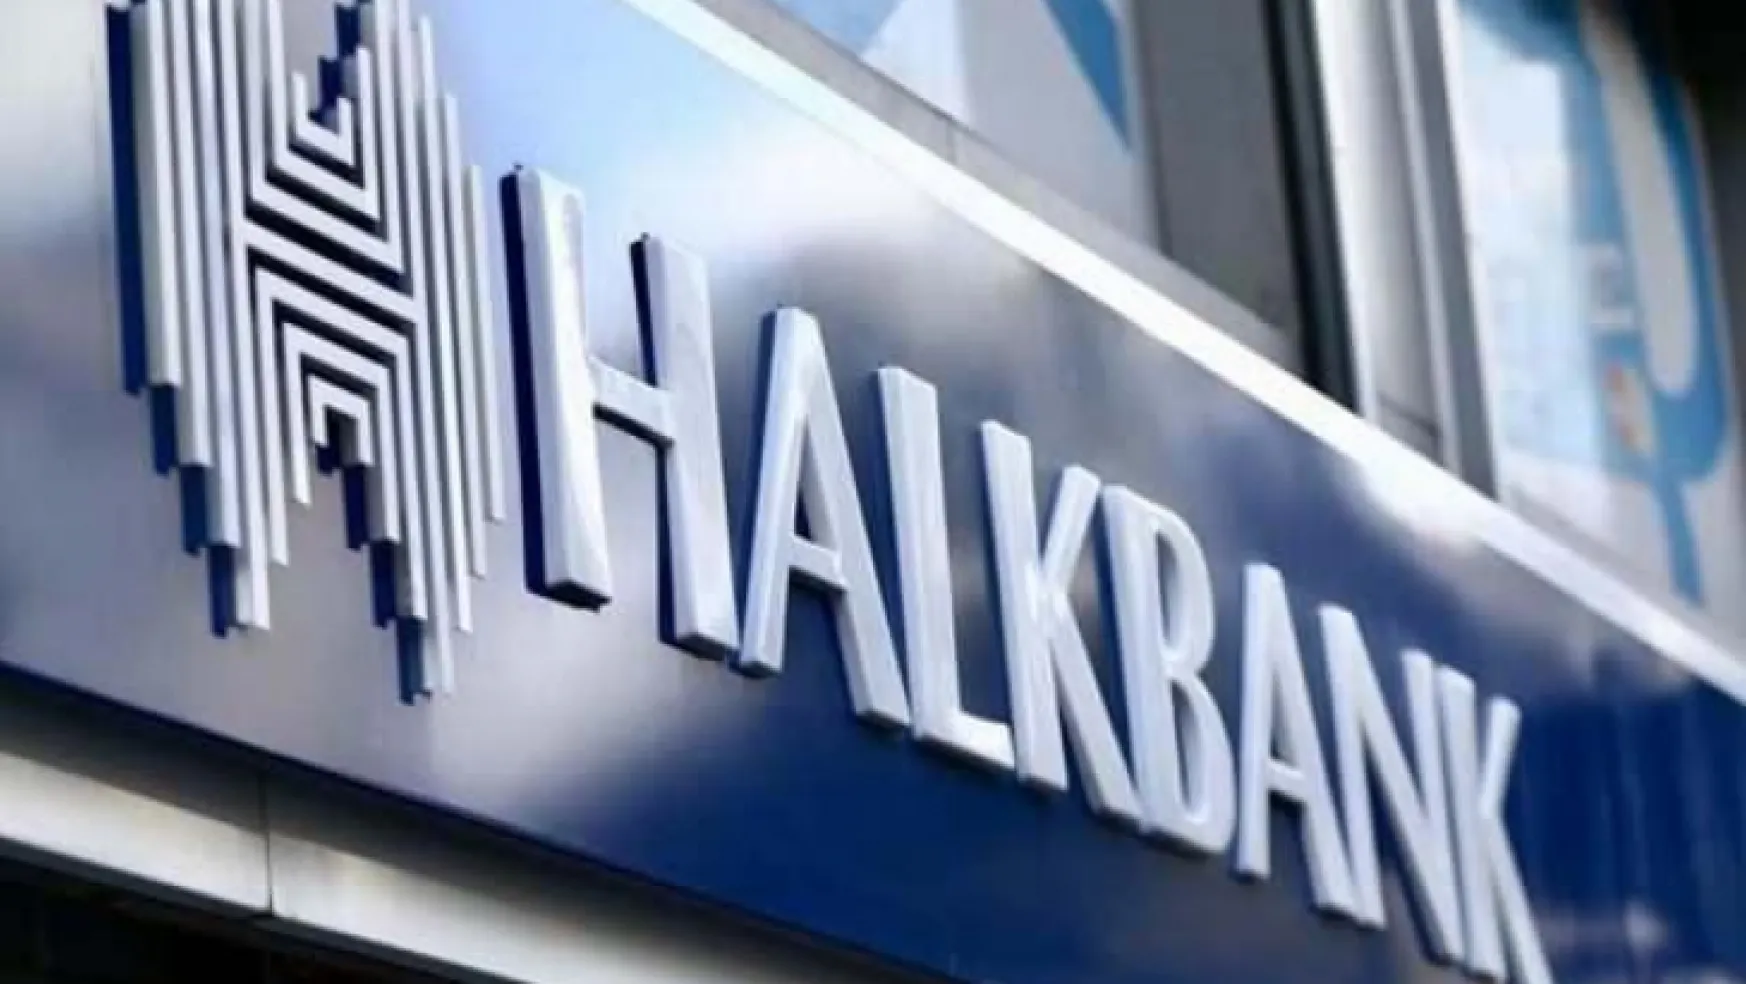 ABD Yüksek Mahkemesi'nden 'Halkbank' kararı